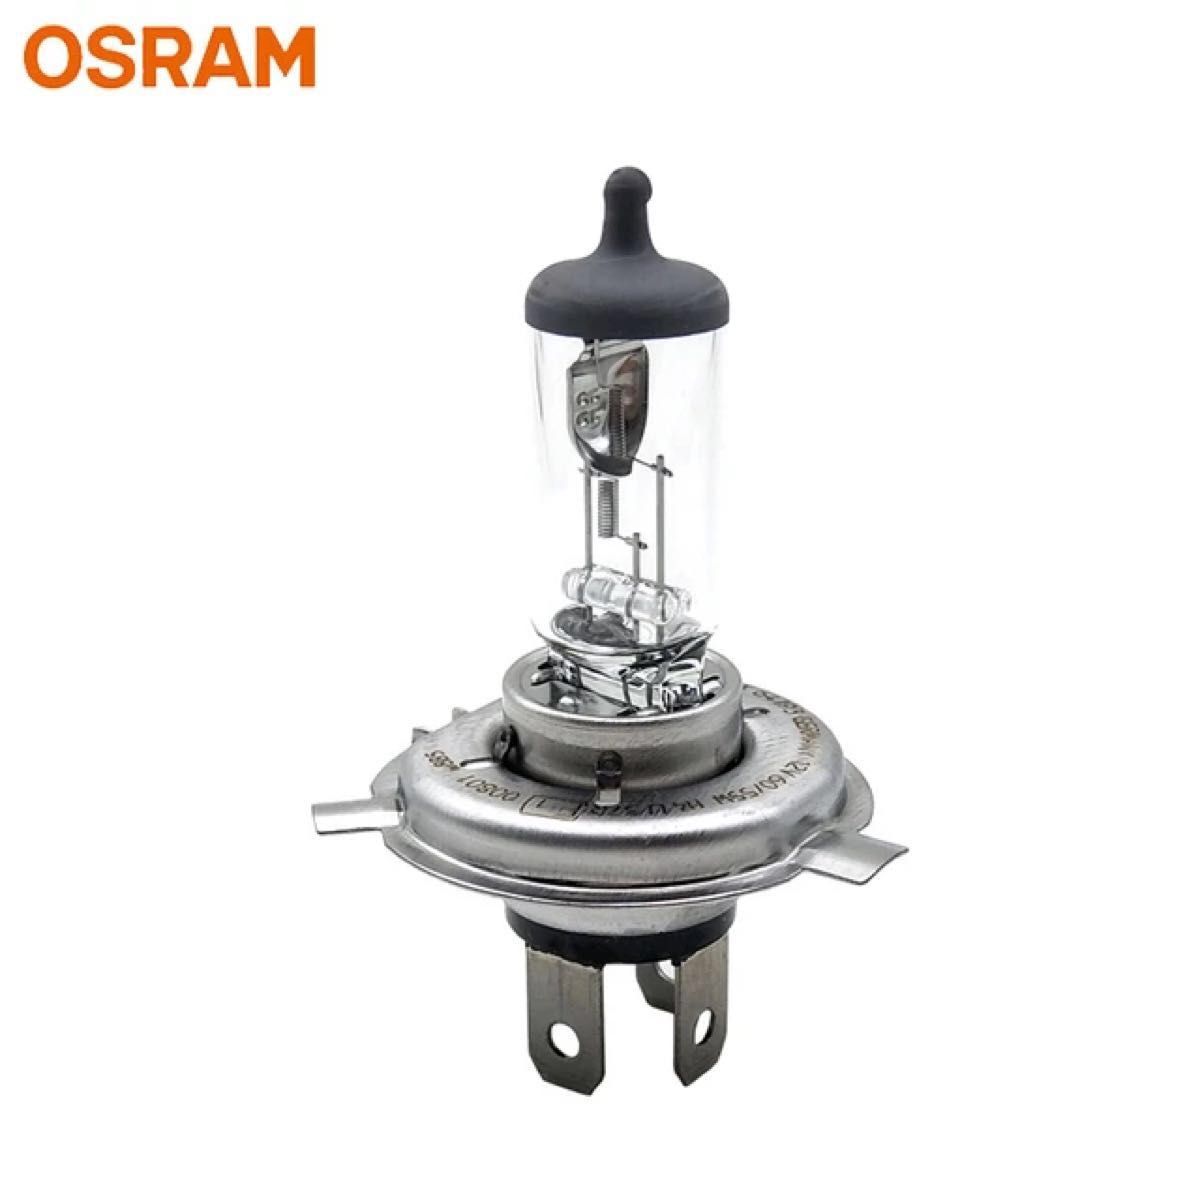 【送料込み】OSRAM H4ヘッドランプ ハロゲンバルブ 12V60/55W 3200K H4U クリアー×1個 車検対応